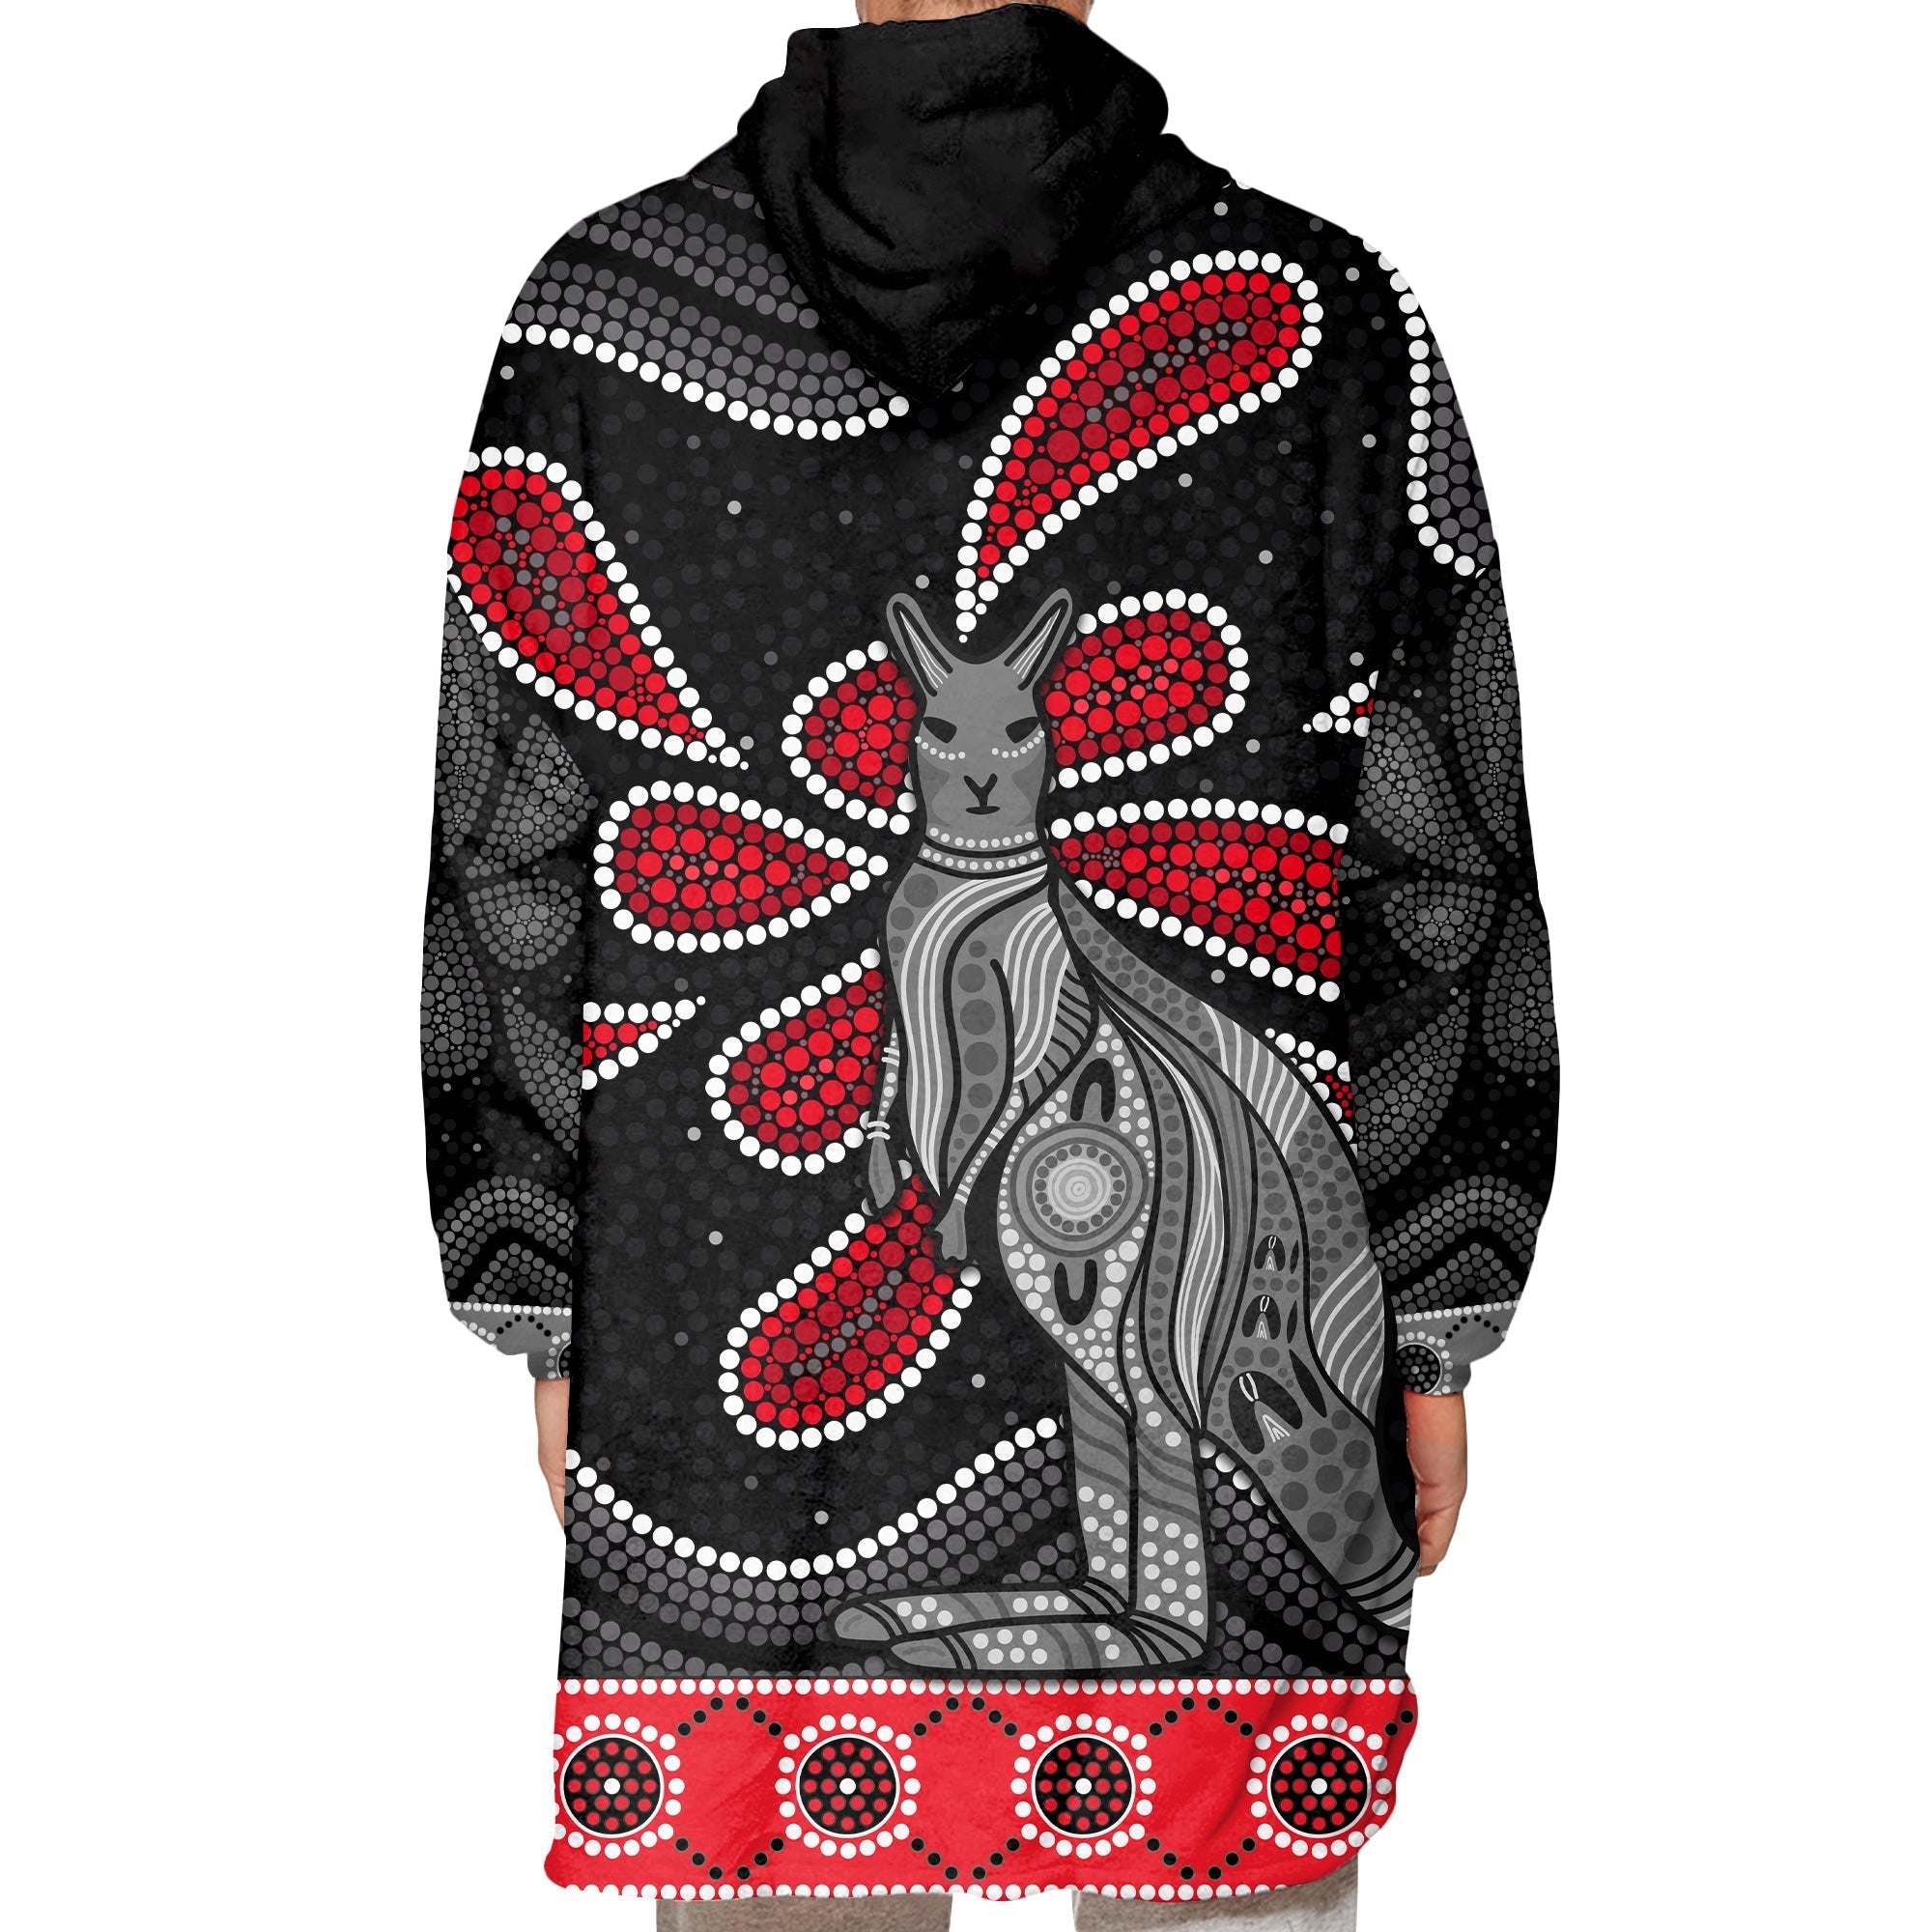 custom-personalised-aboriginal-boomerang-wearable-blanket-hoodie-kangaroo-australia